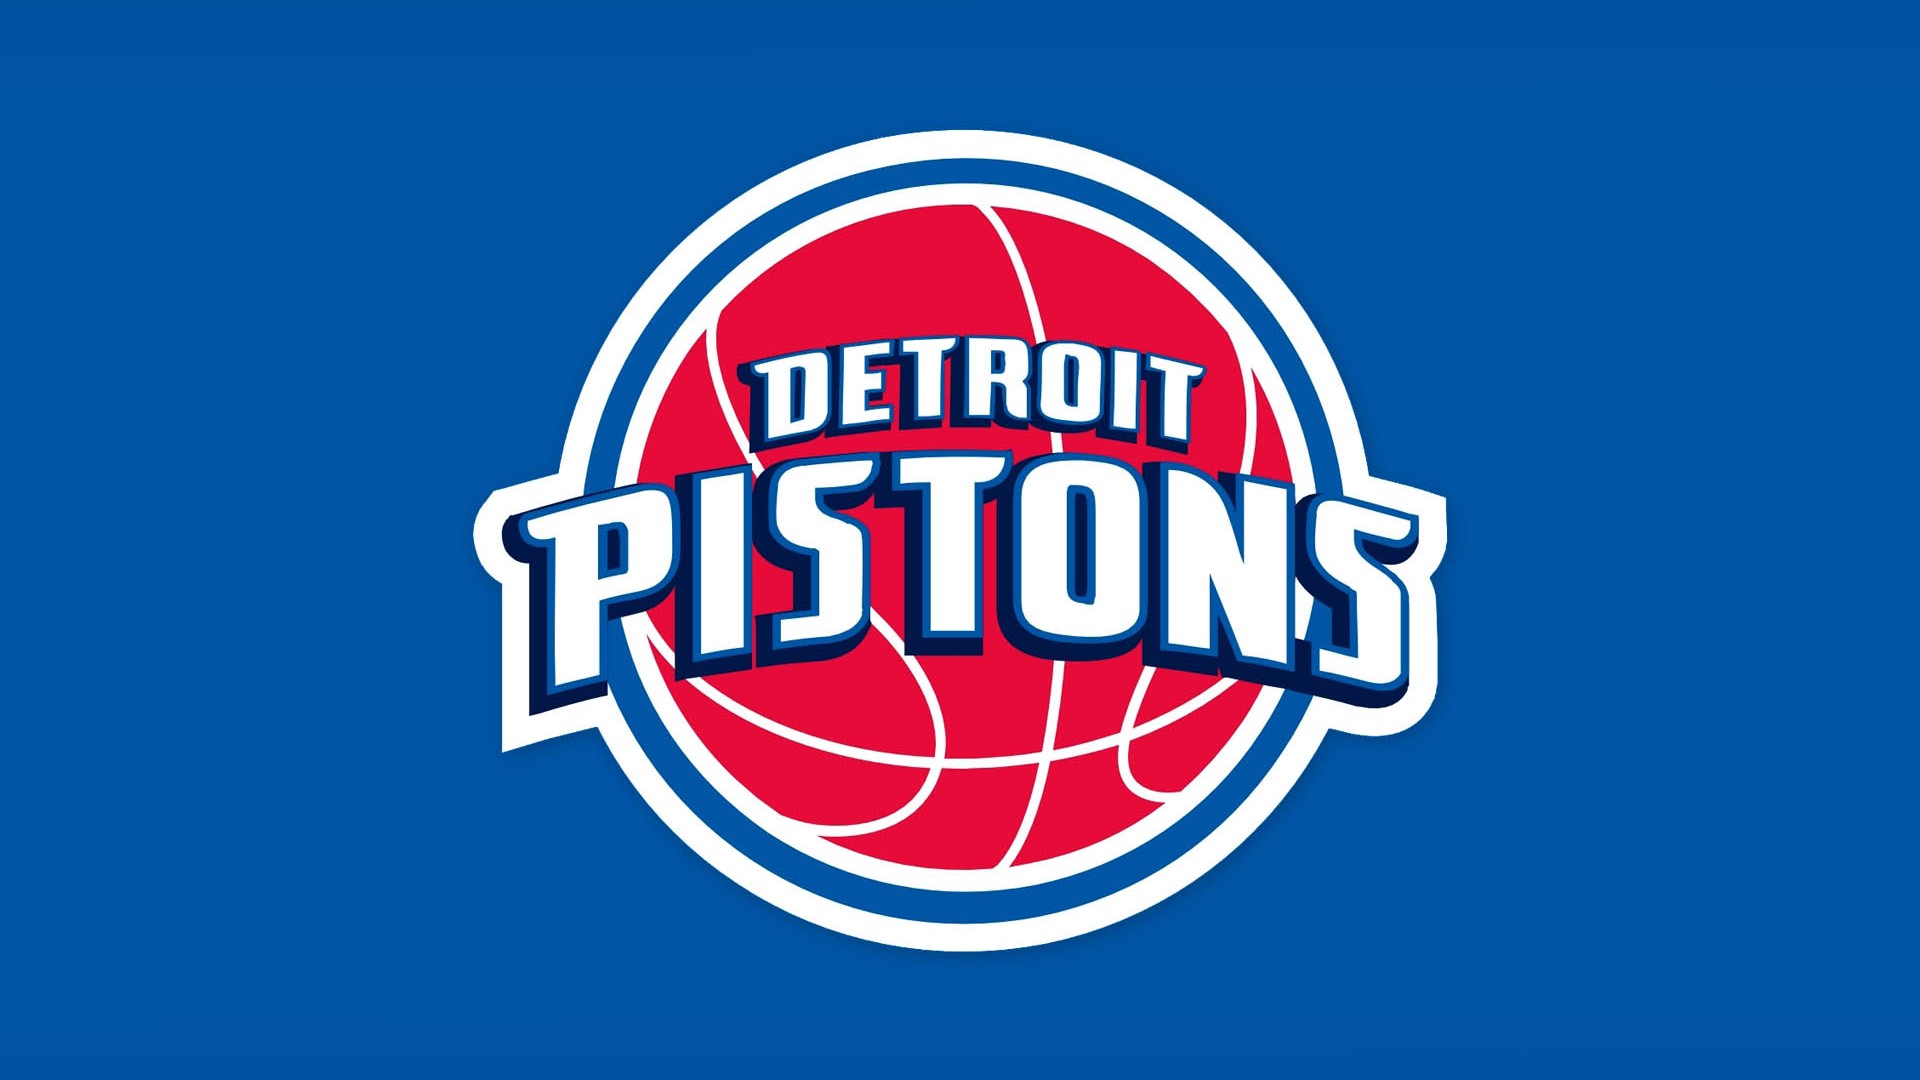 Detroit Pistons rumors